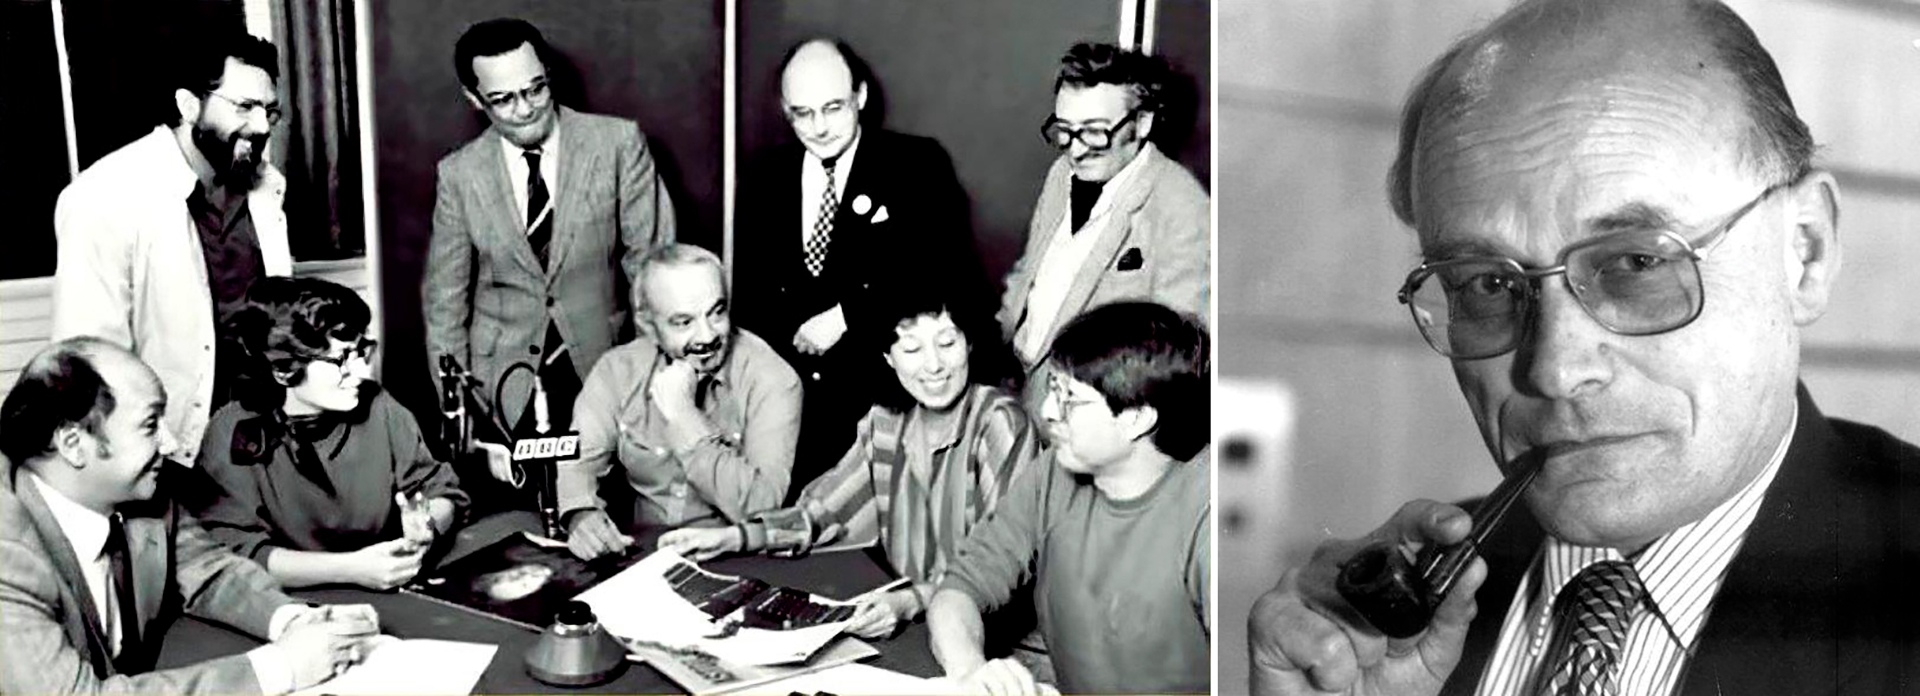 Ástor Piazzolla en la BBC de Londres junto a Simón Collier, 1985. (Gentileza Fundación Internacional Carlos Gardel)